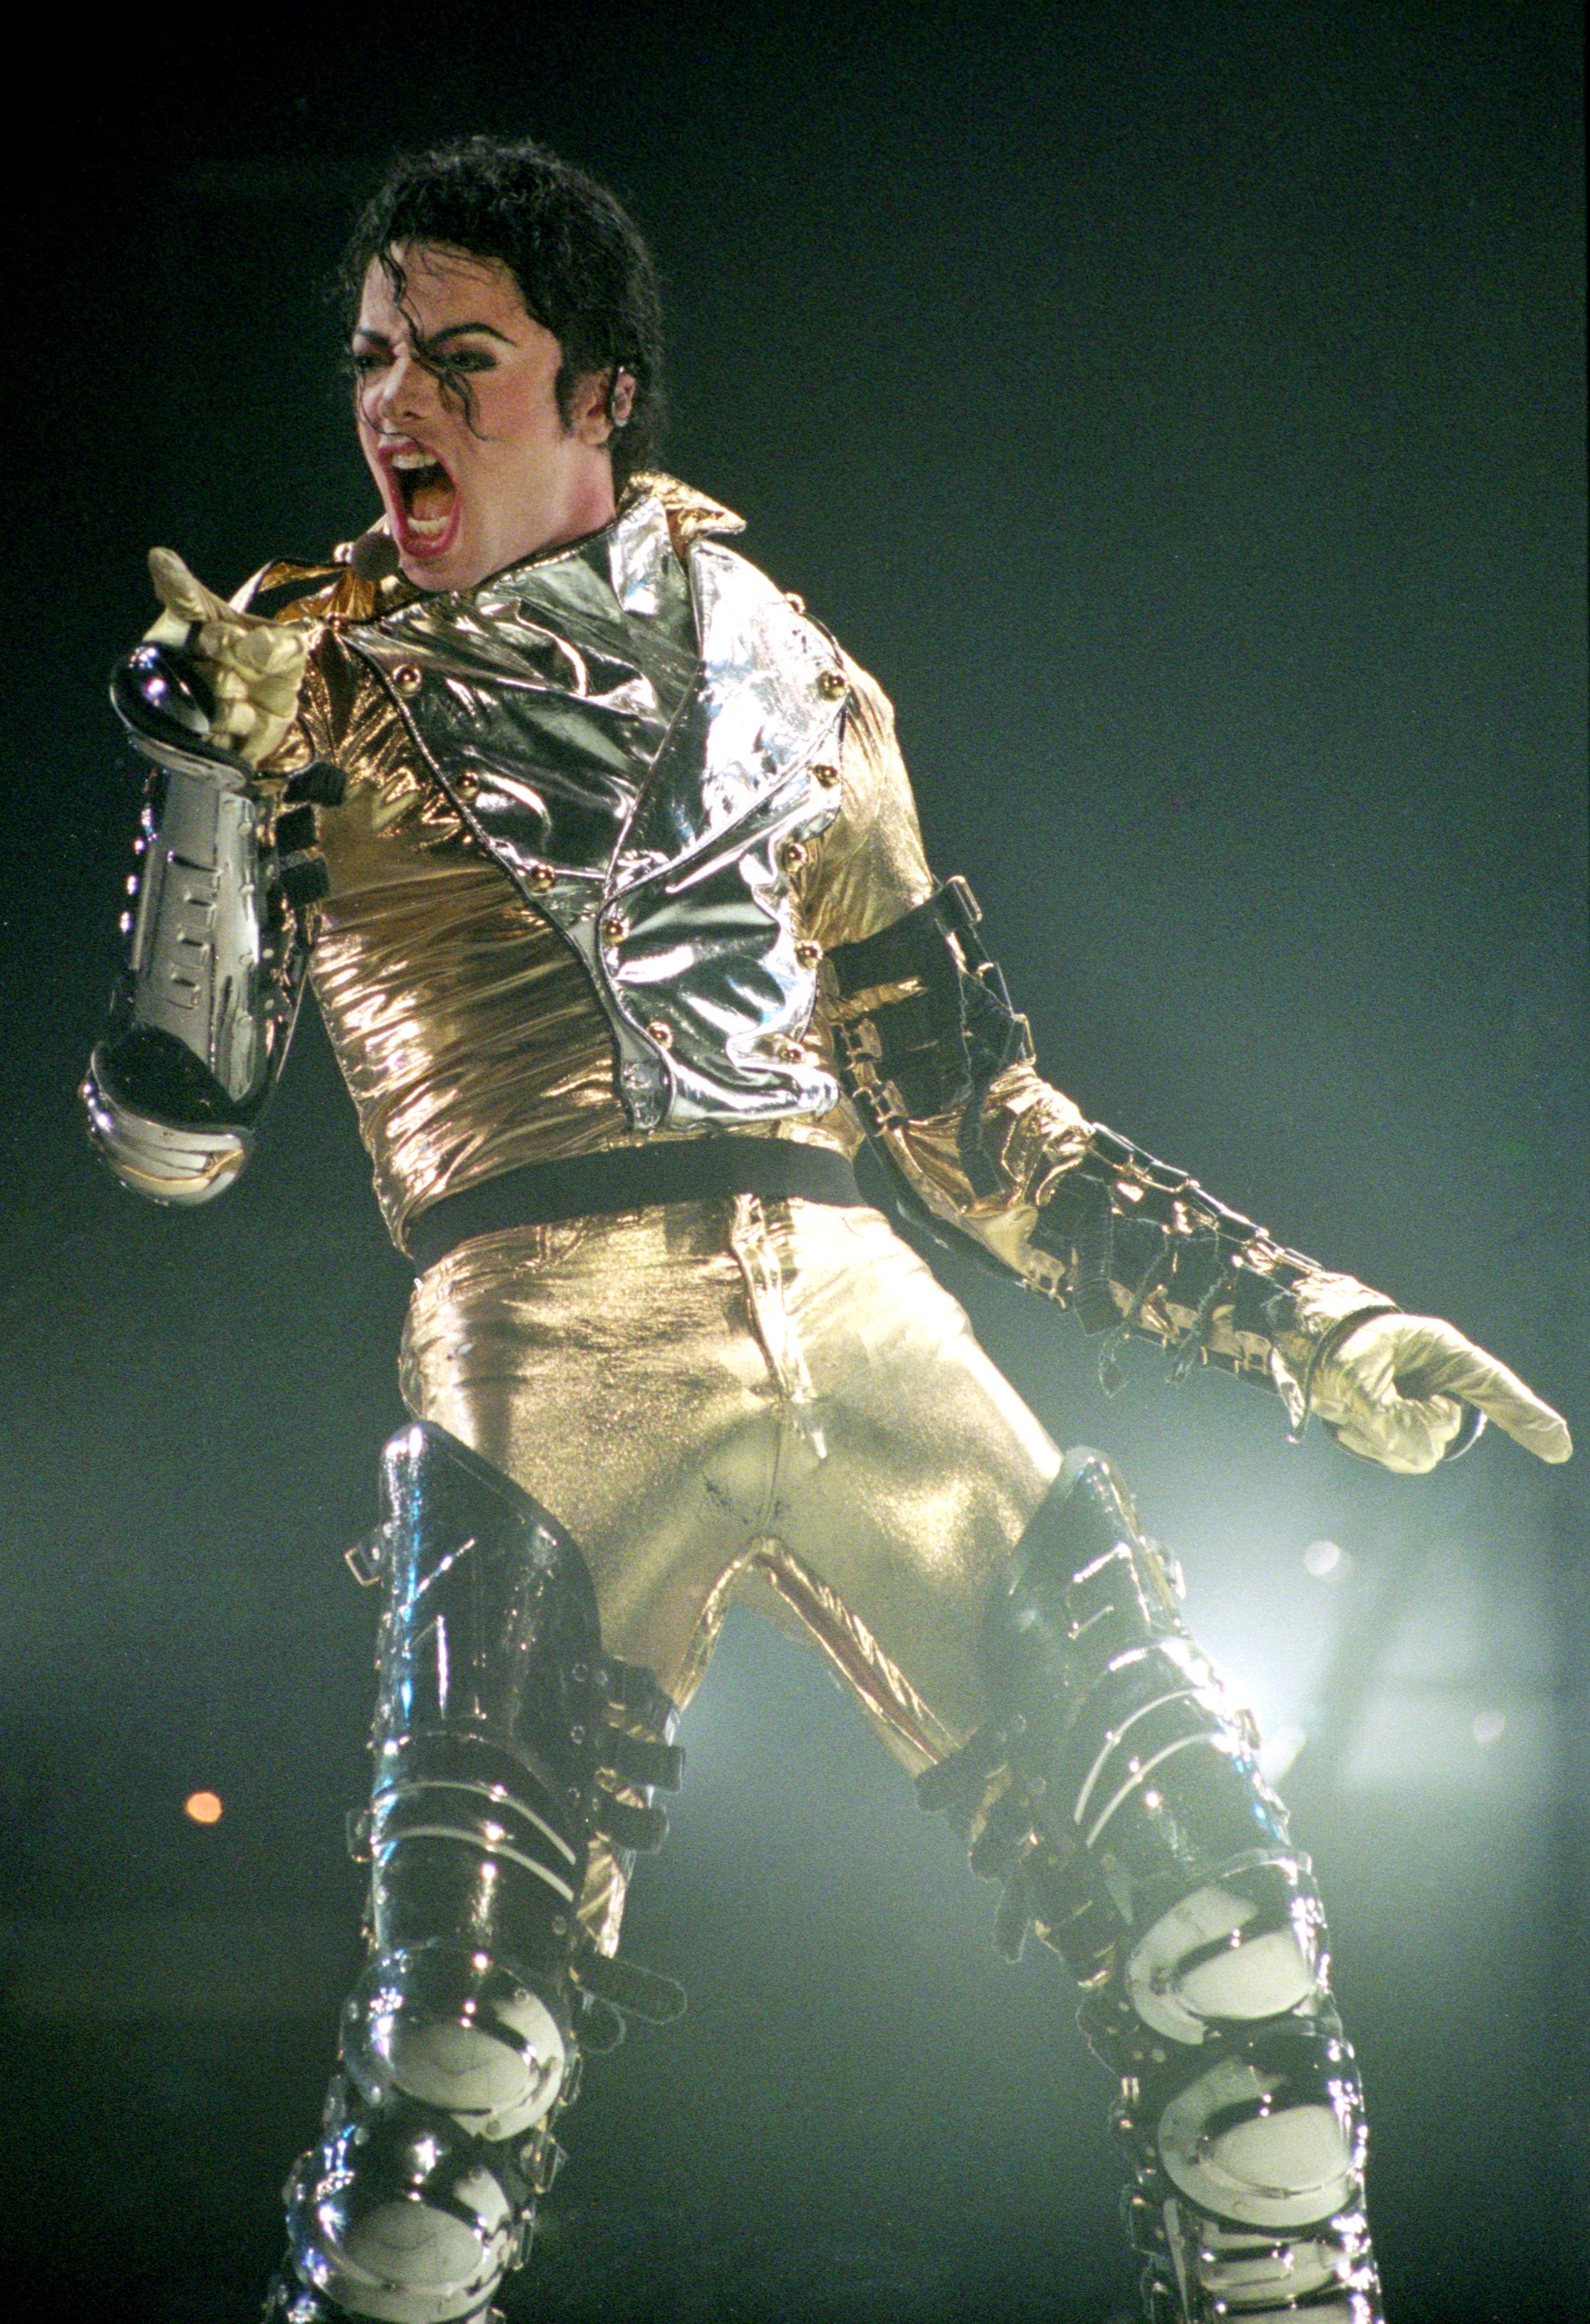 Michael Jackson en la gira mundial "HIStory" el 10 de noviembre de 1996, en Auckland, Nueva Zelanda. | Foto: Getty Images